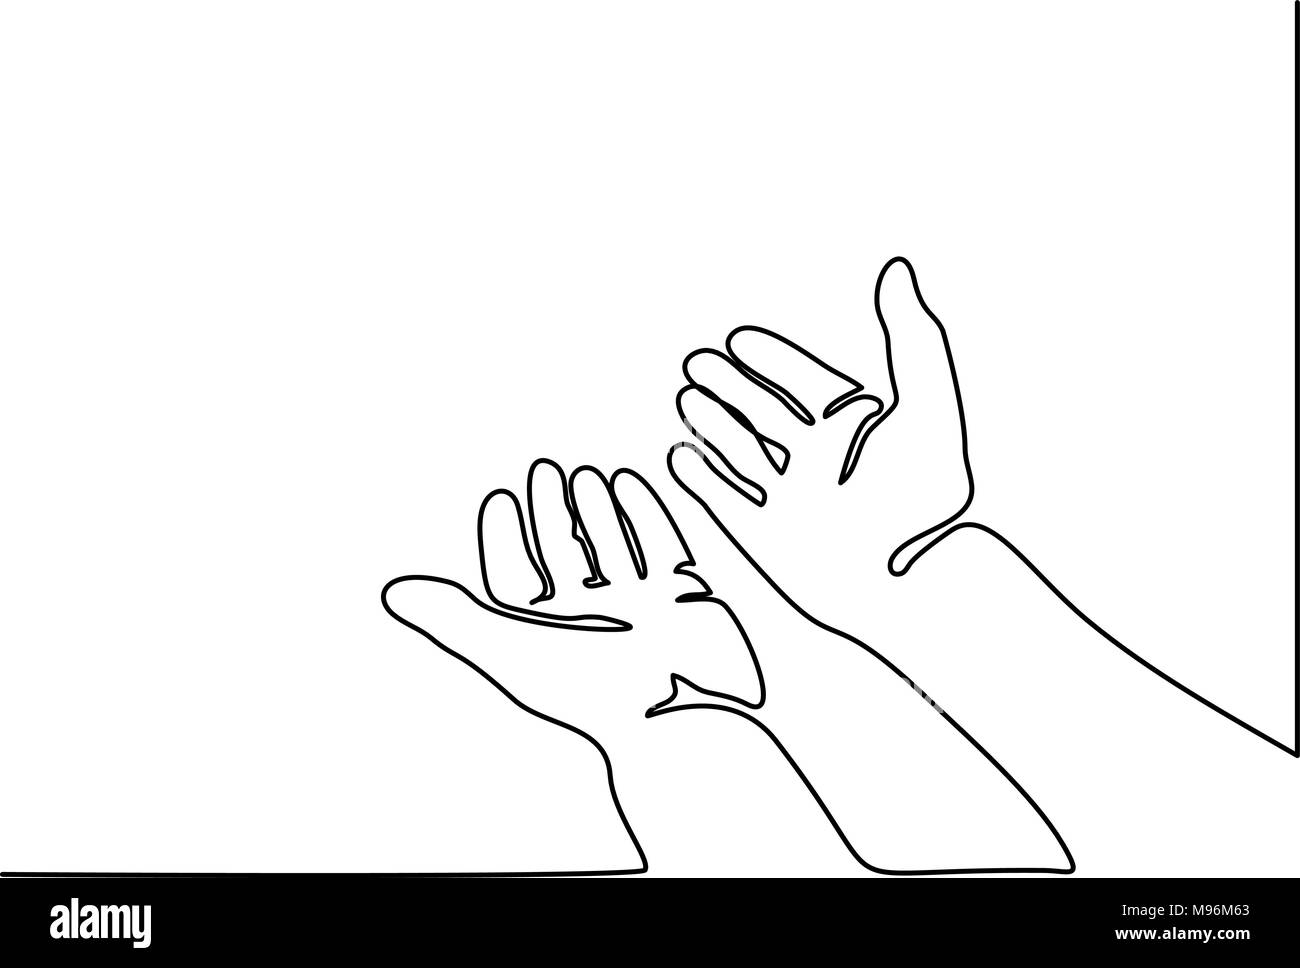 Hände Handflächen zusammen beten Stock Vektor